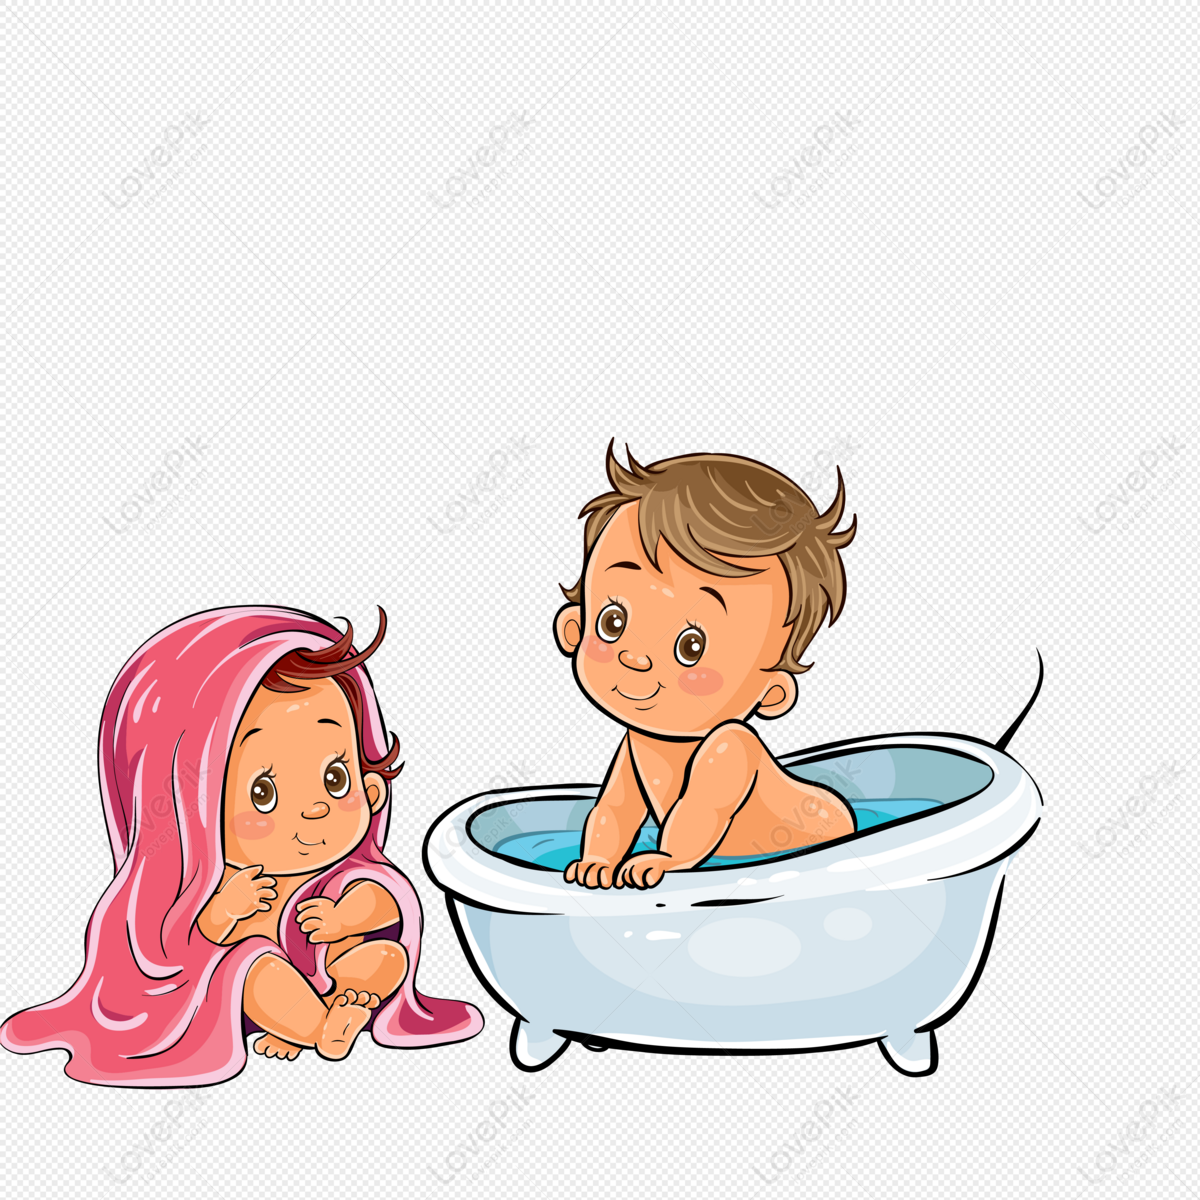 Em bé tắm chung: Không còn gì tuyệt vời hơn khi được trải nghiệm cảm giác tắm chung cùng em bé yêu của bạn. Hãy xem hình ảnh đáng yêu này để cùng chia sẻ niềm vui tuyệt vời đó.